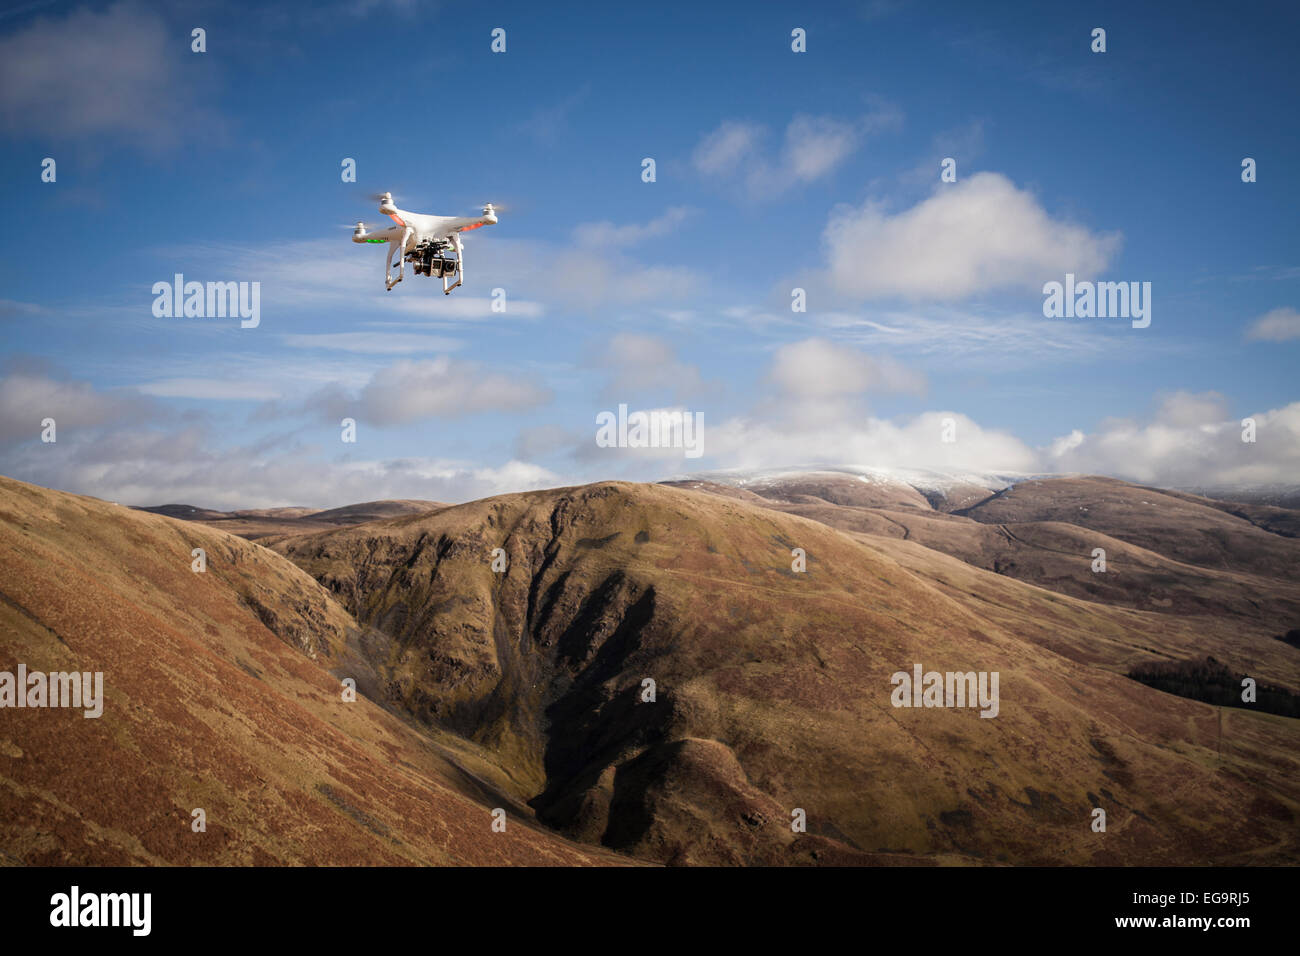 Un drone vola al di sopra di una quinta scenografica in una giornata di sole Foto Stock